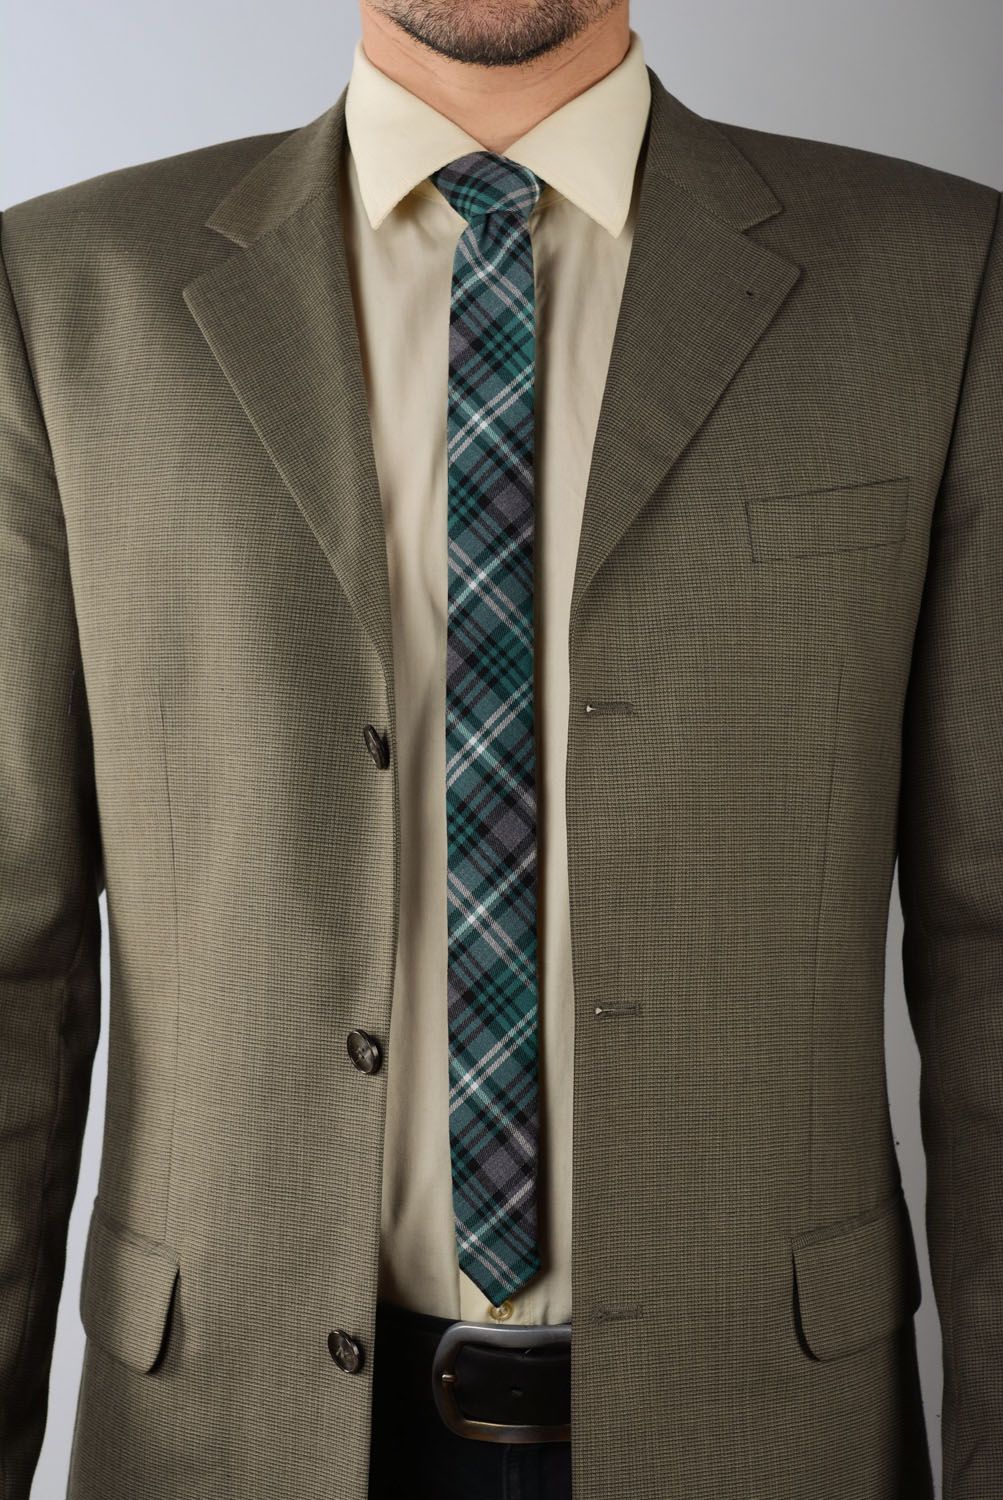 Cravate en tweed à carreaux faite main photo 1